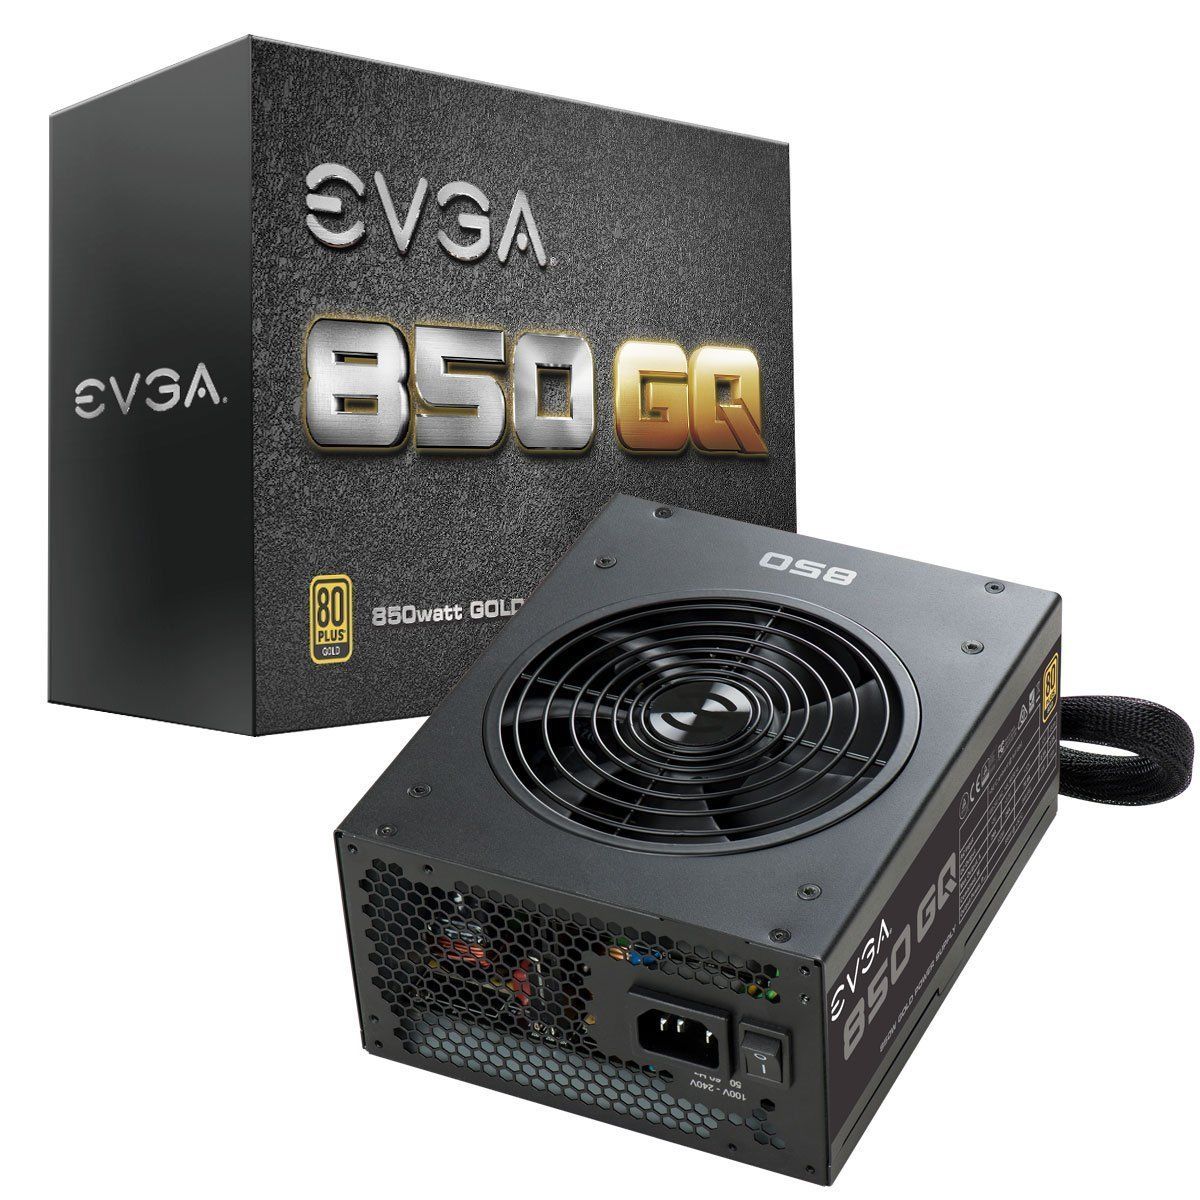 EVGA 850 GQ, 80+ GOLD 850W, Semi Modular, EVGA ECO Mode